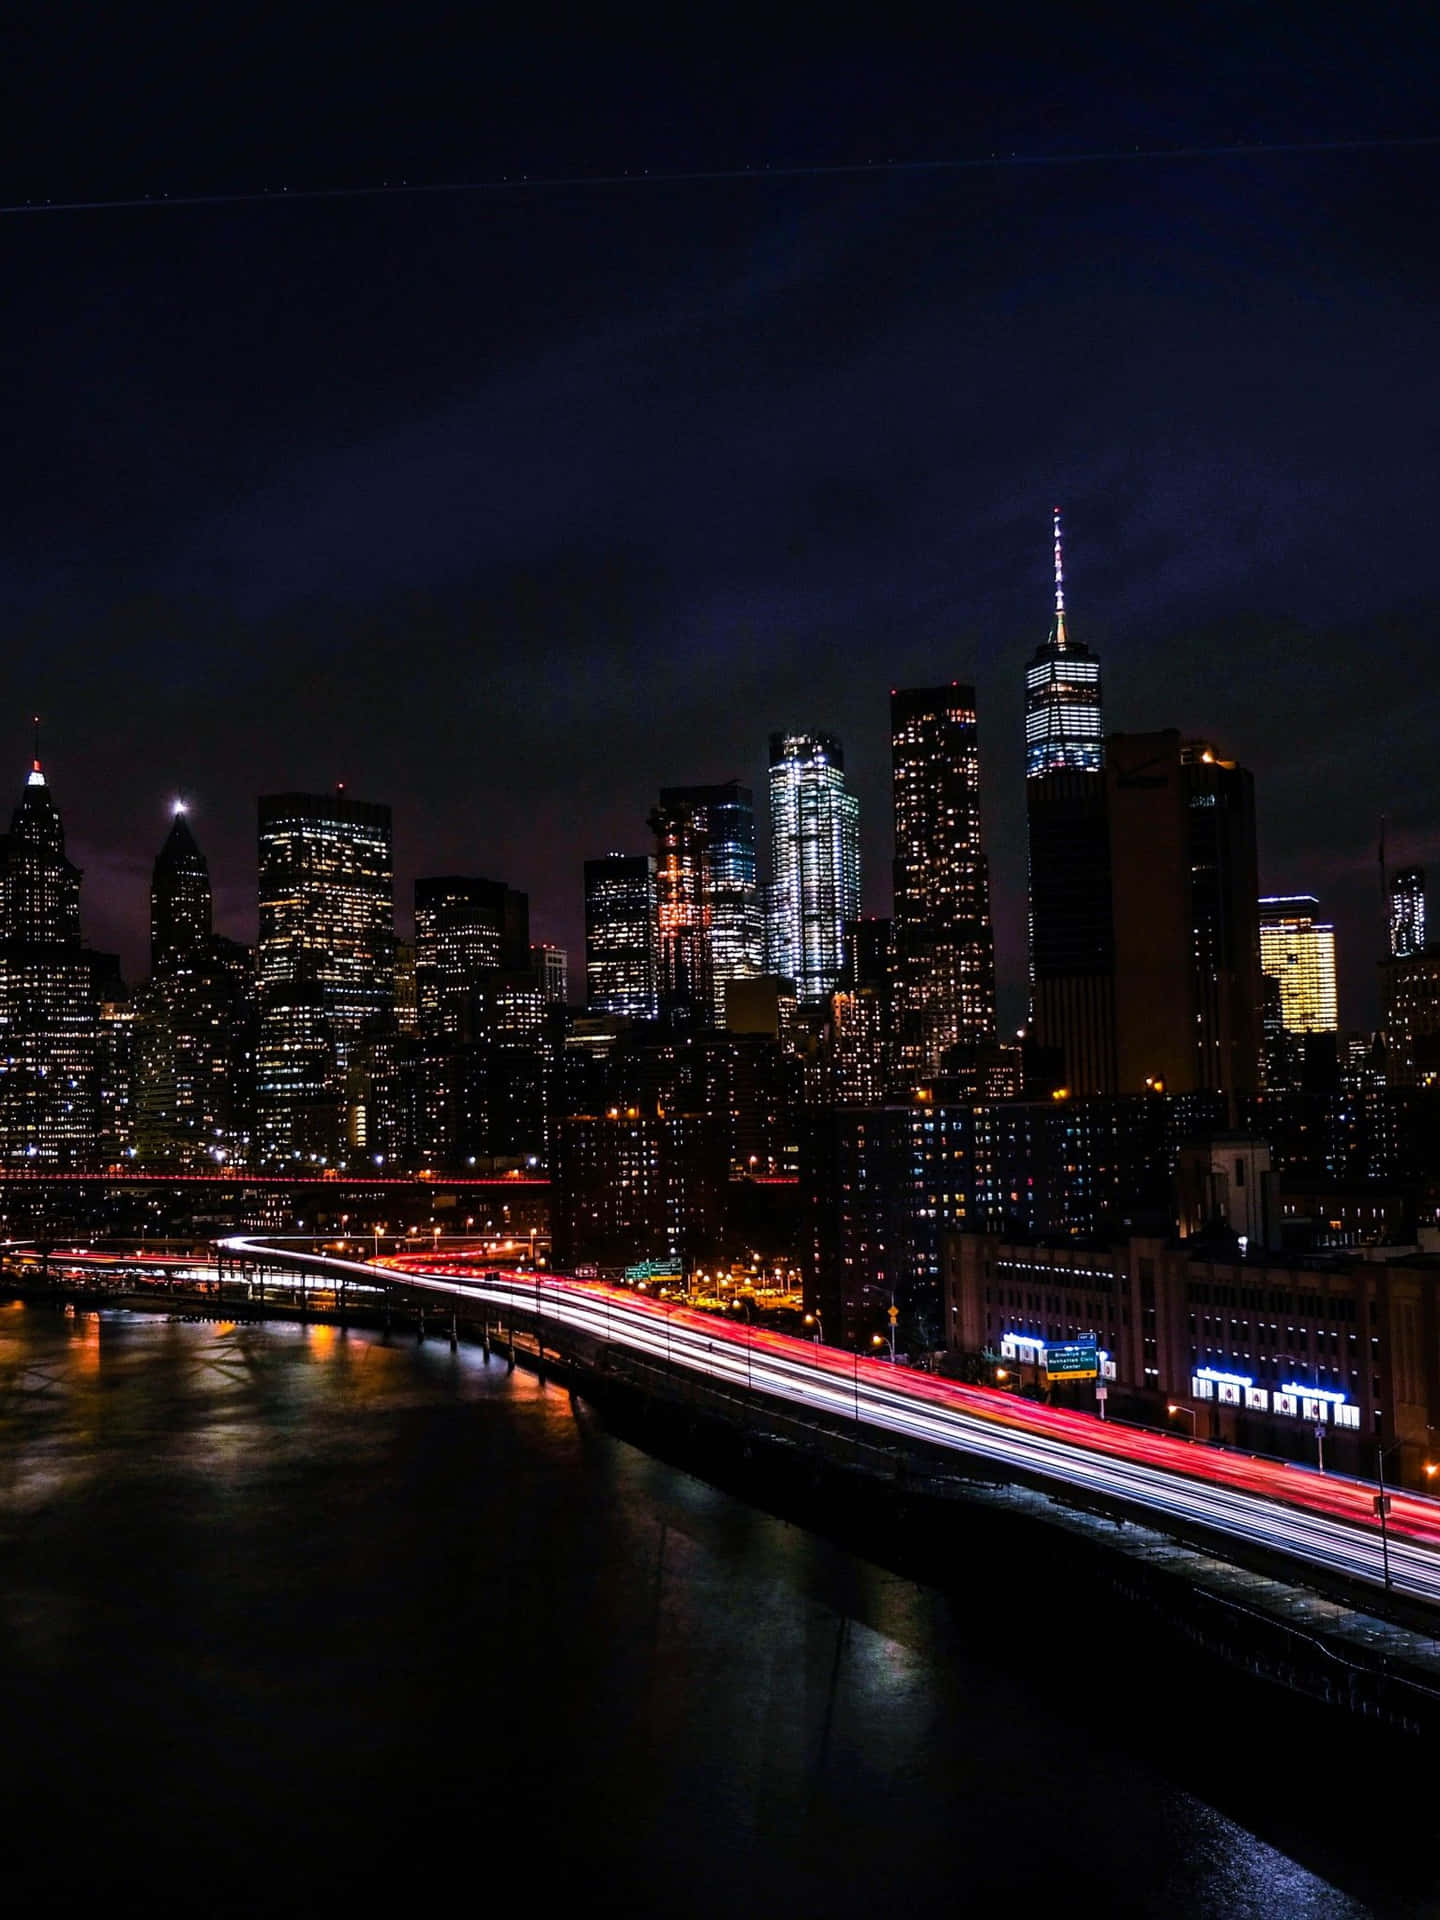 Imagende La Ciudad De Nueva York De Noche En La Carretera Junto Al Mar.